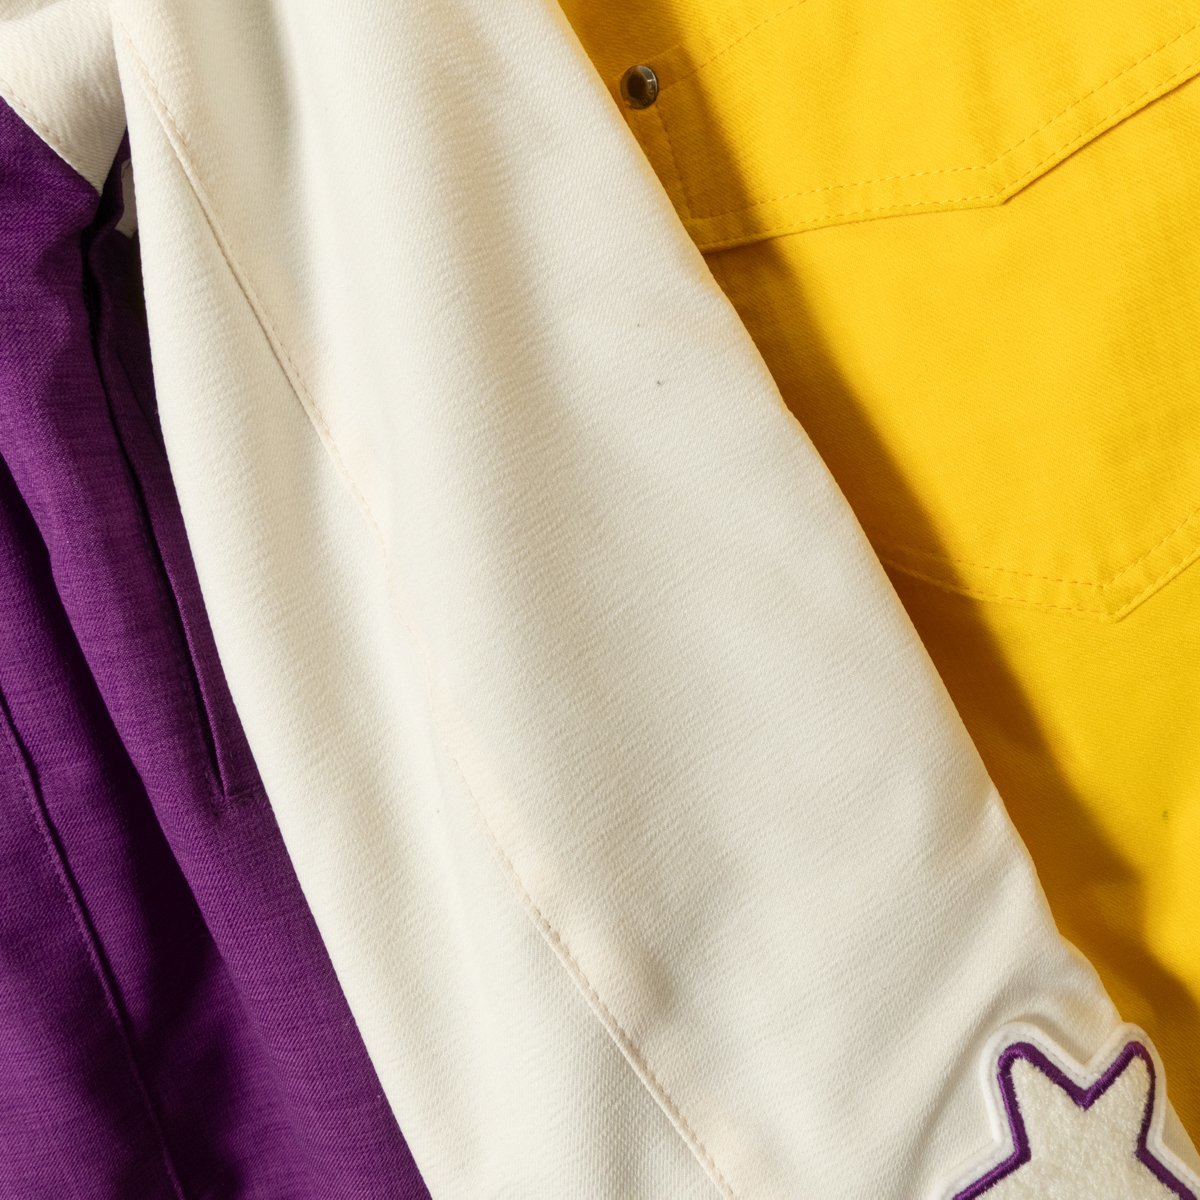 ESTIVO エスティボ セットアップ 上下セット スノボウェア 中綿 ジャケット パンツ アウター ボトムス Mサイズ ポリエステル100% 紫 黄色_画像4